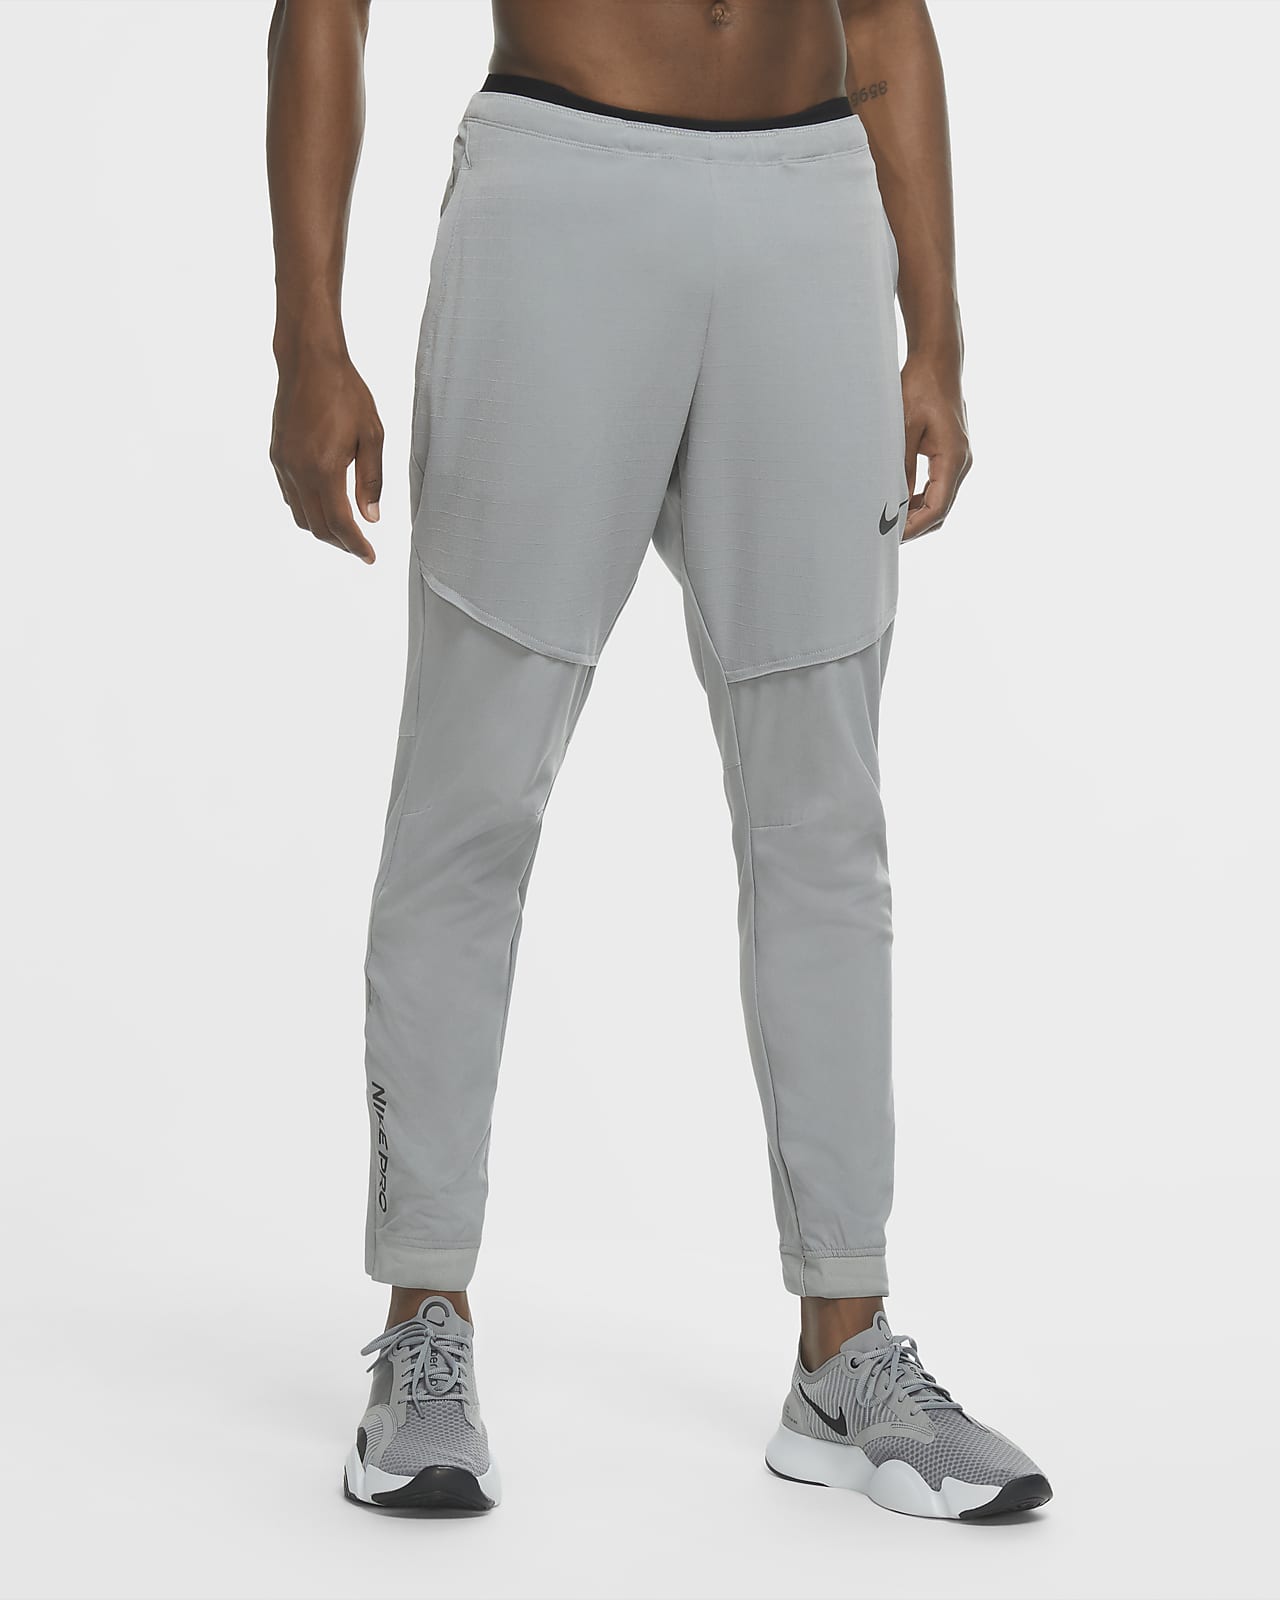 Pantaloni Nike Pro Flex Rep - Uomo. Nike CH